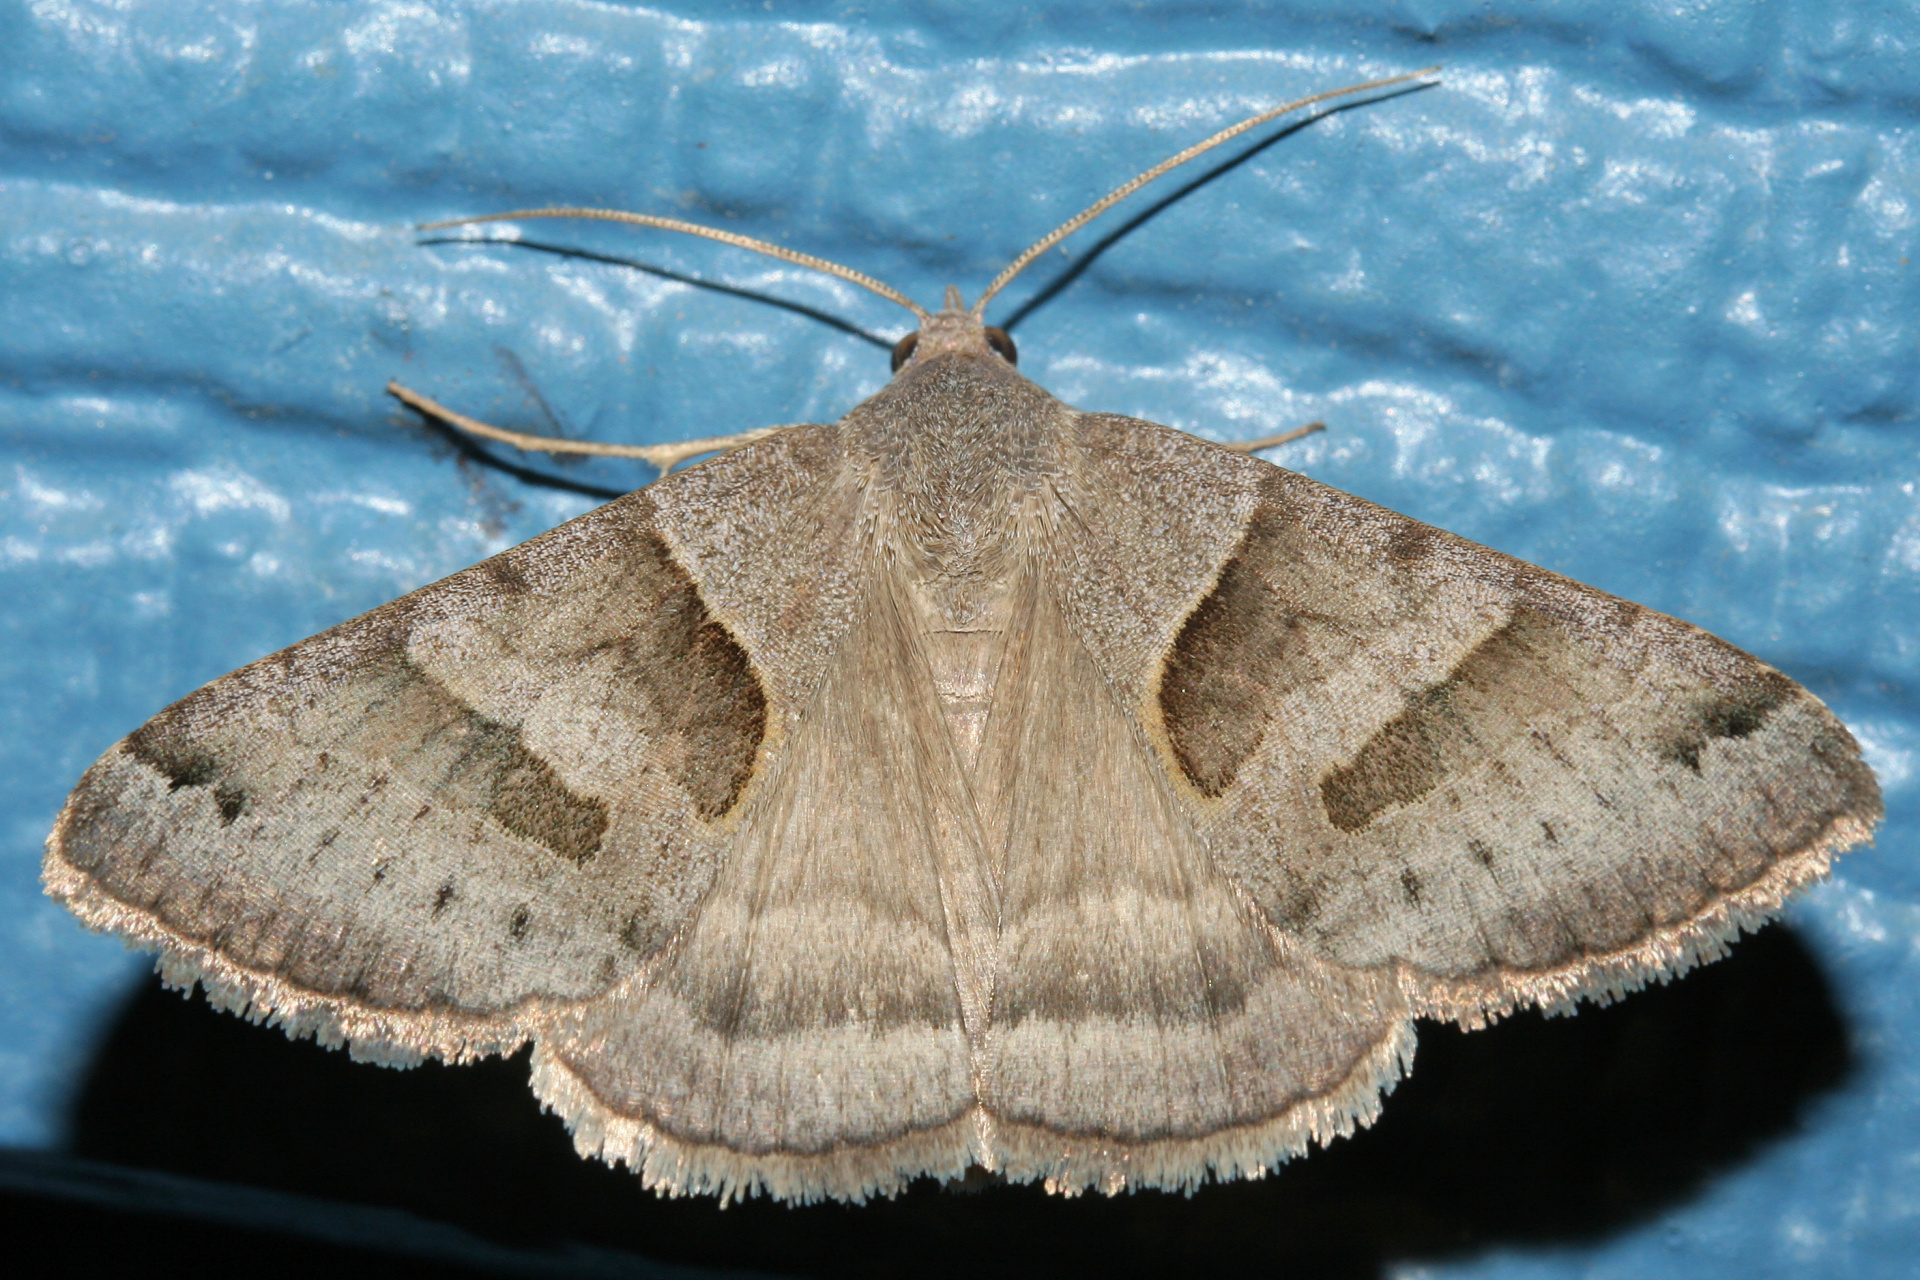 Caenurgina erechtea (Podróże » USA: Na ziemi Czejenów » Zwierzęta » Motyle i ćmy » Noctuidae)